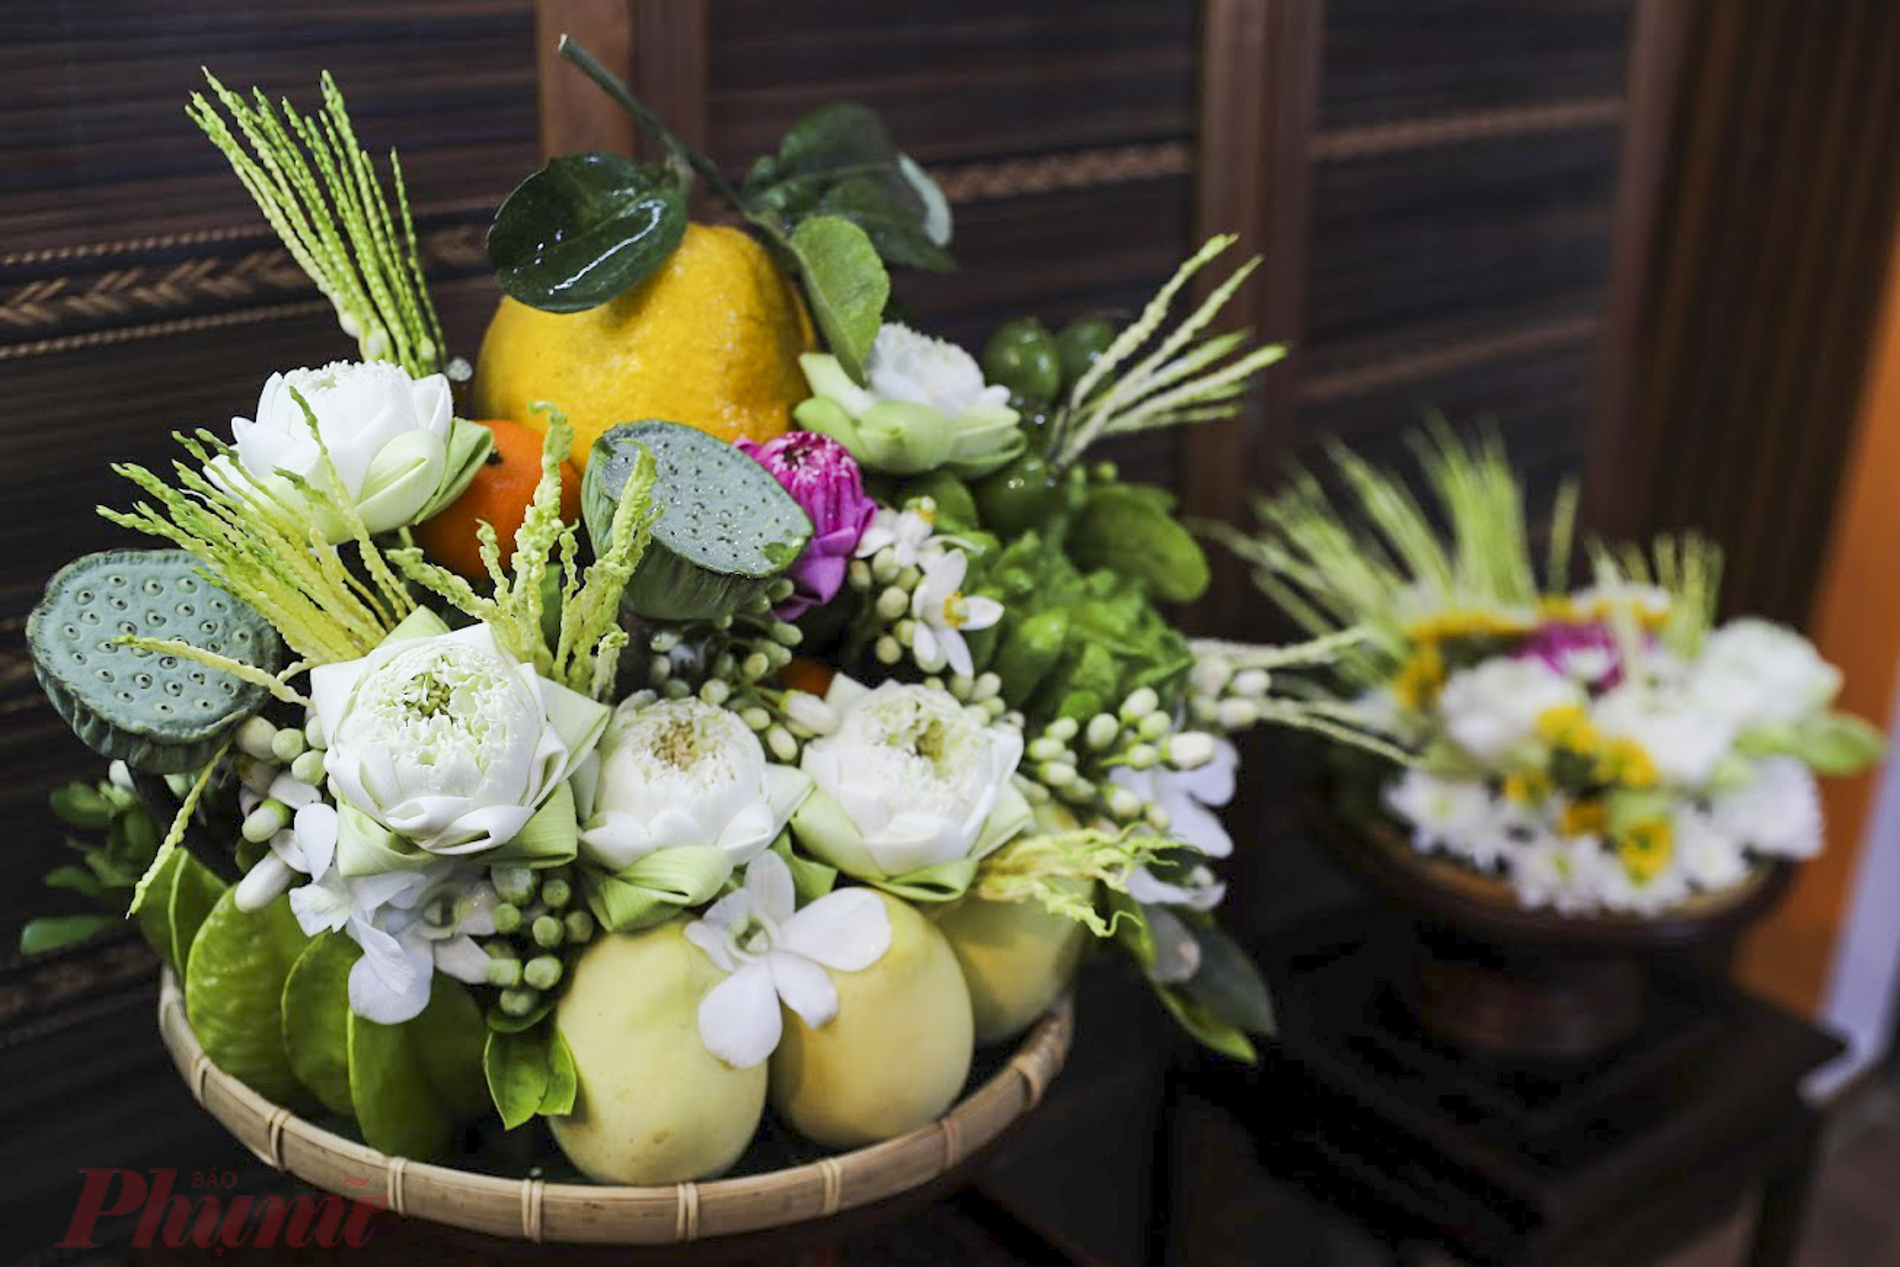 Mâm ngũ quả và đĩa hoa cúng sau khi đã hoàn thiện đem giao cho khách hàng.